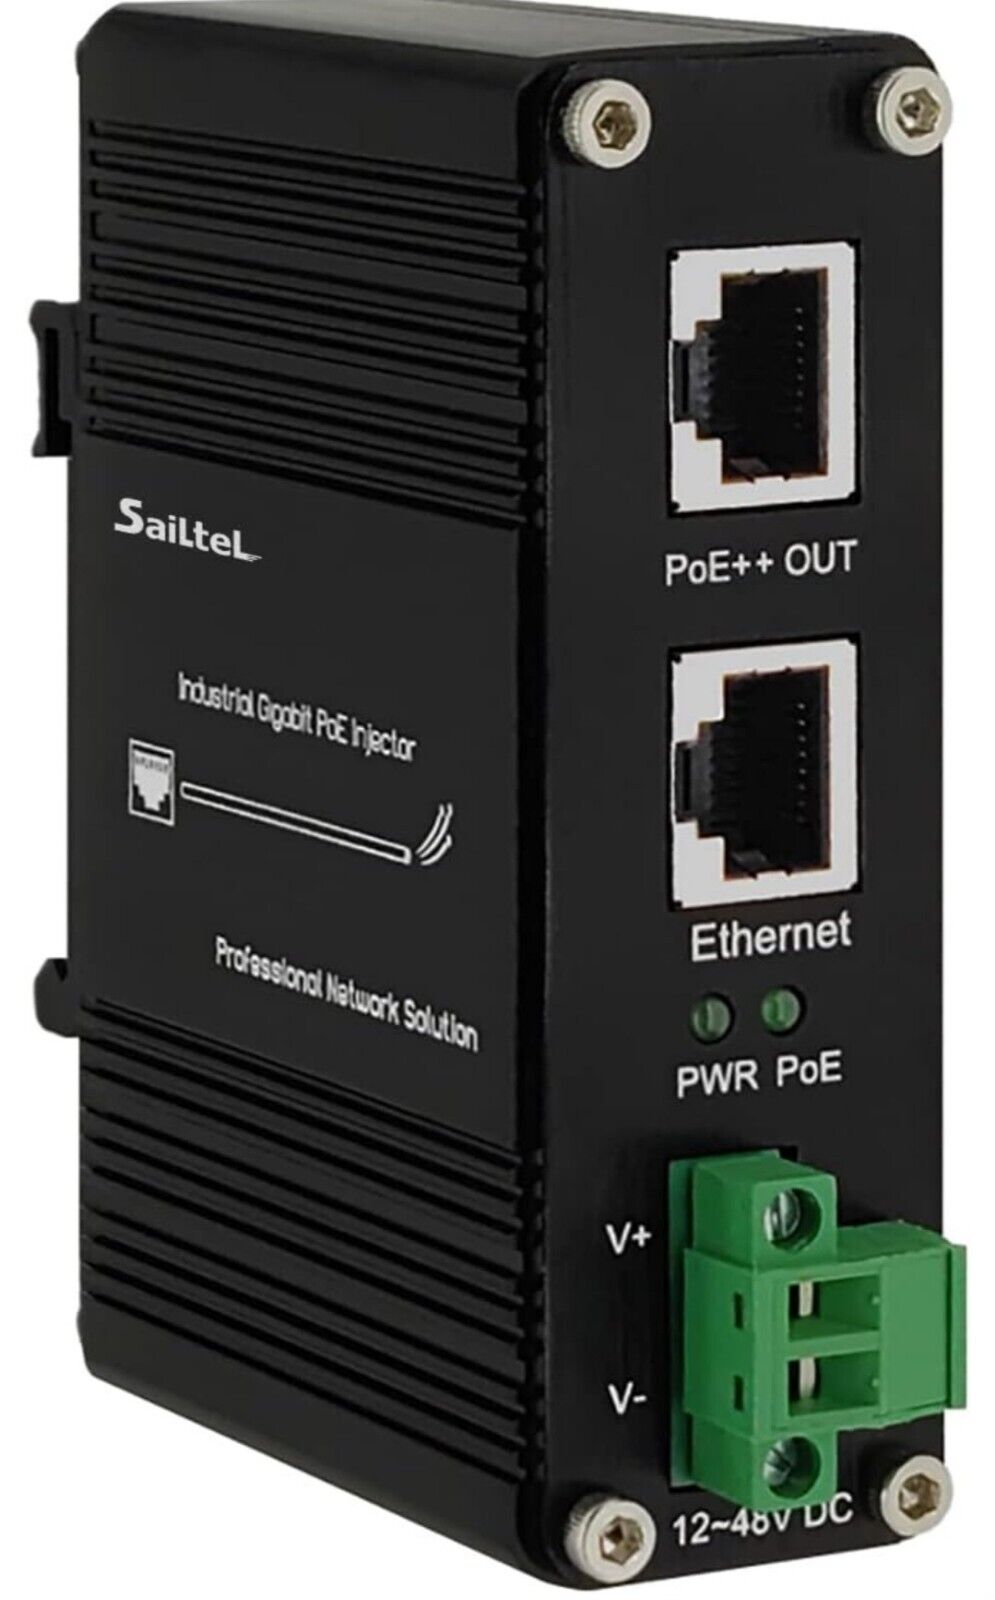 95W Industrial Gigabit PoE++ Injector, IEEE 802.3at/802.3af, 12-48V DC Input